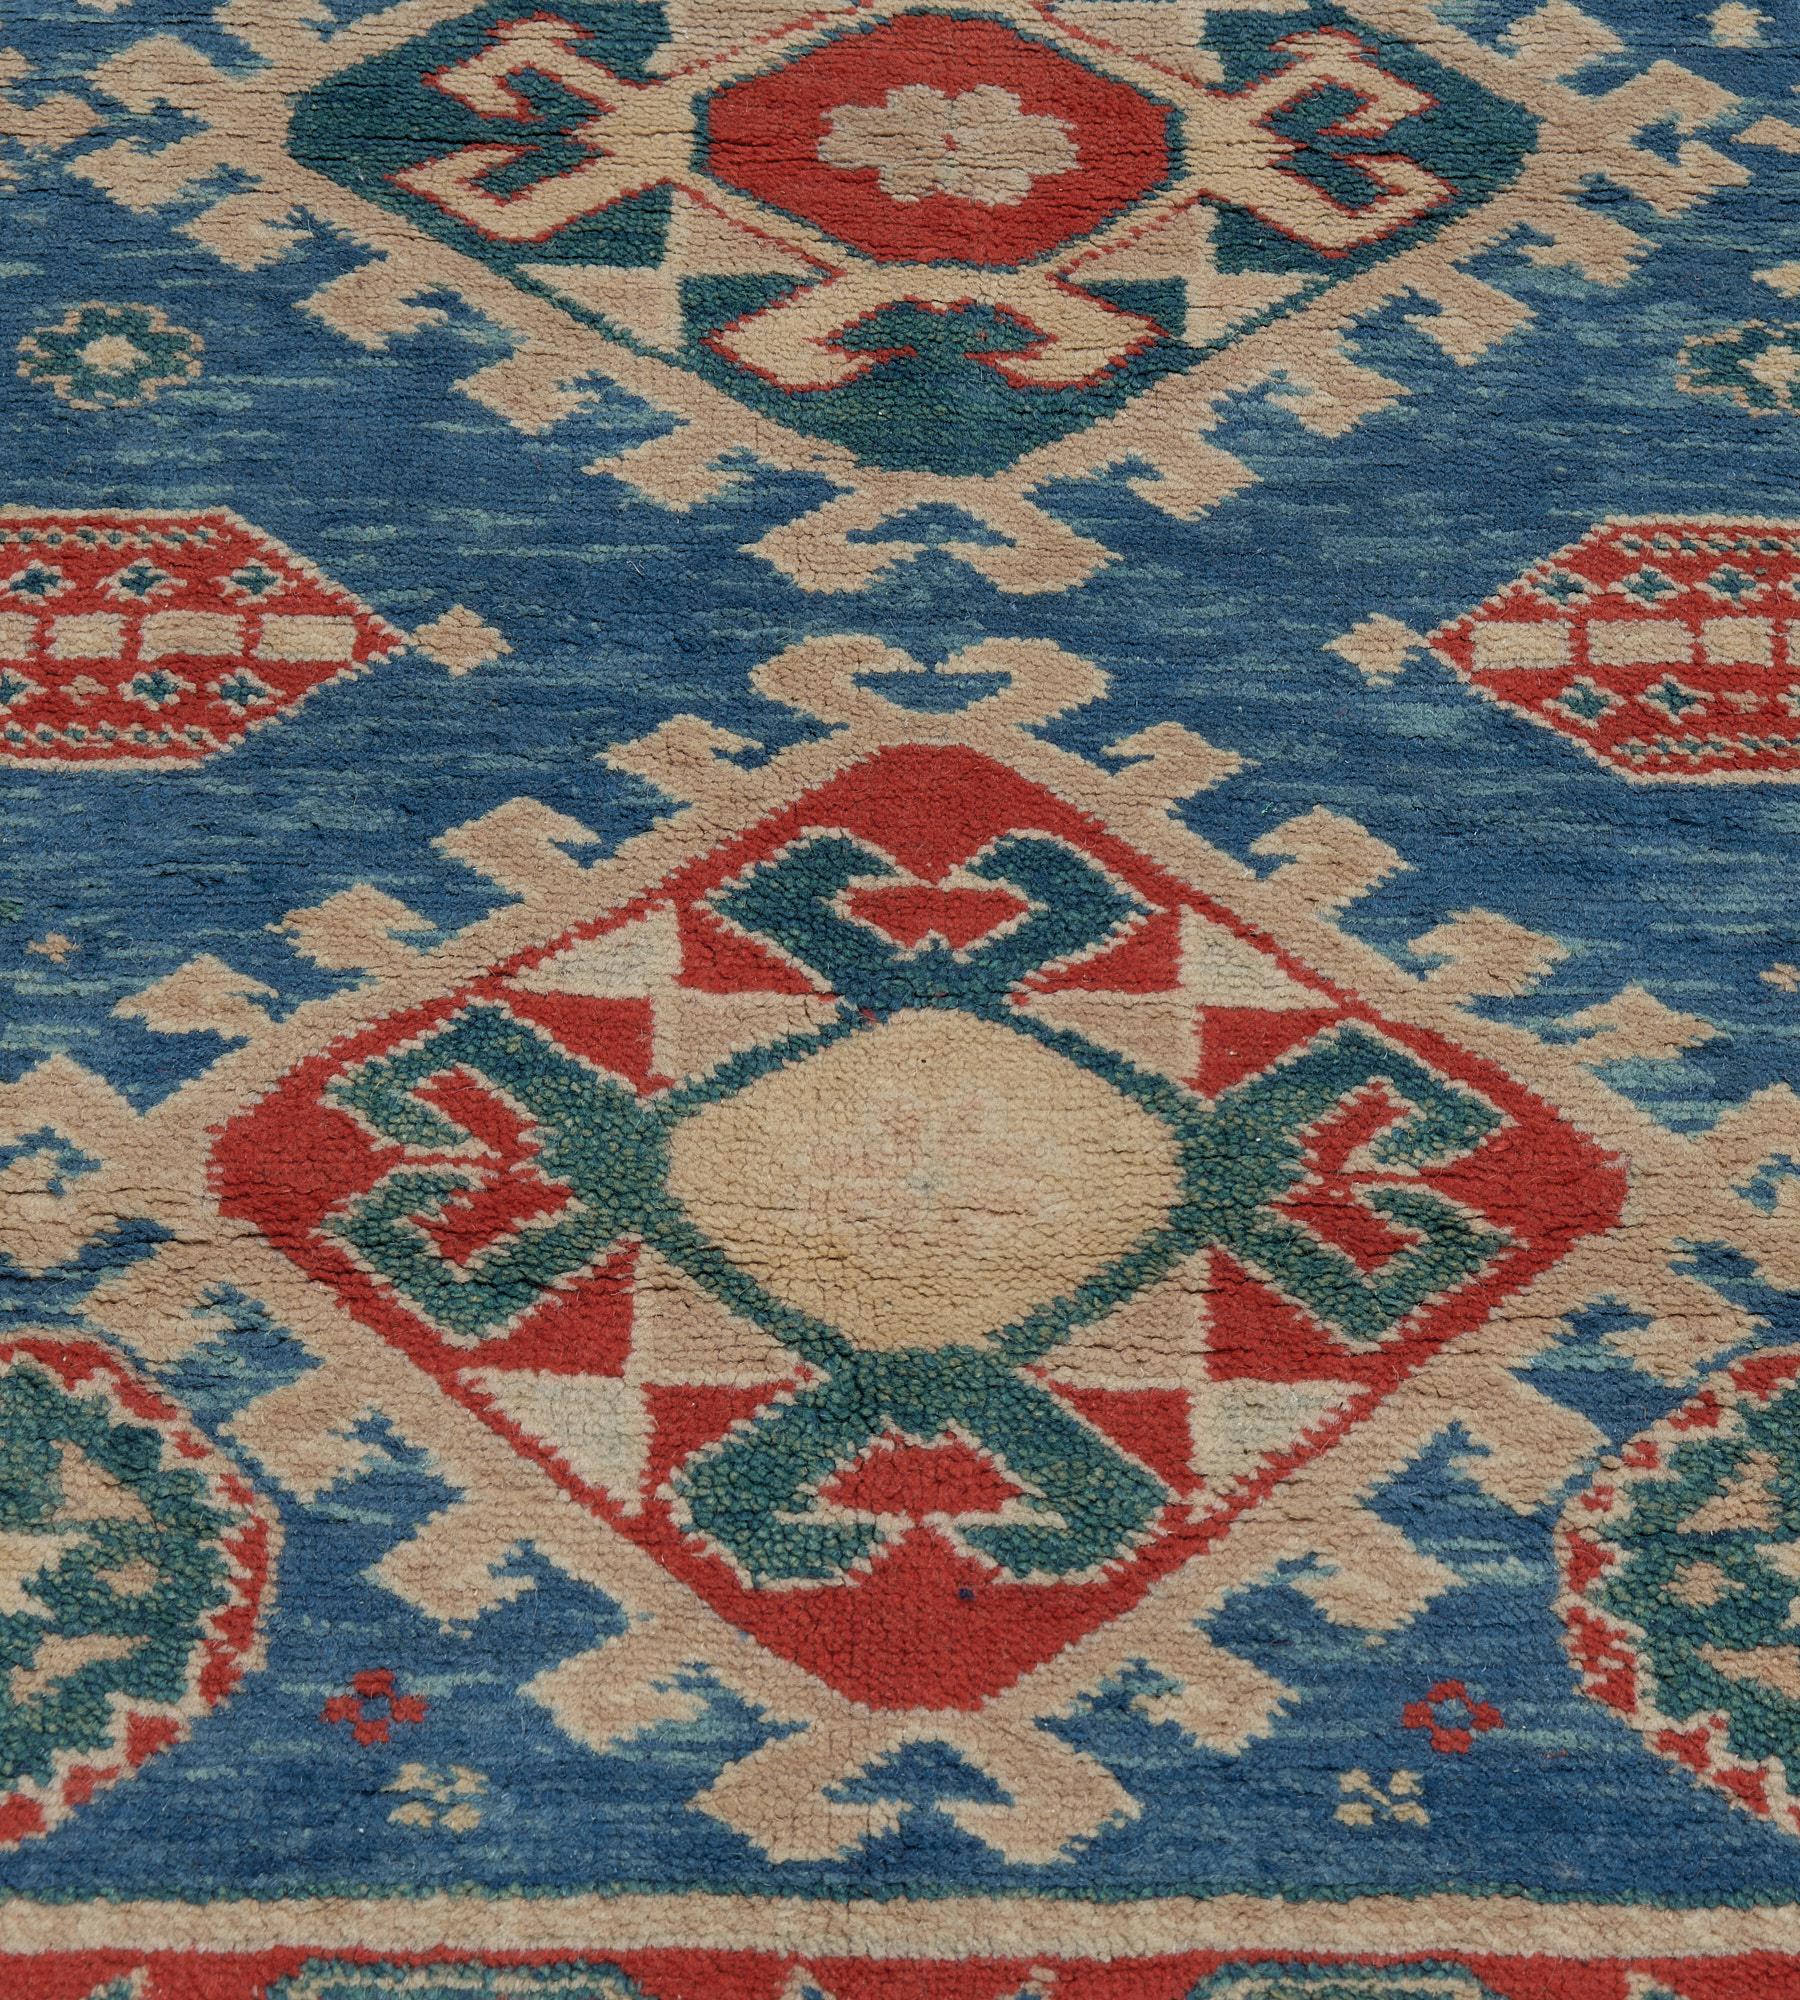 Dieser traditionelle, handgewebte türkische Teppich hat ein leuchtend blaues Feld, das eine zentrale Säule mit drei gezackten Medaillons in einer roten Blumenrankenbordüre einschließt, zwischen einem rautenförmigen Außenstreifen und einem einfachen